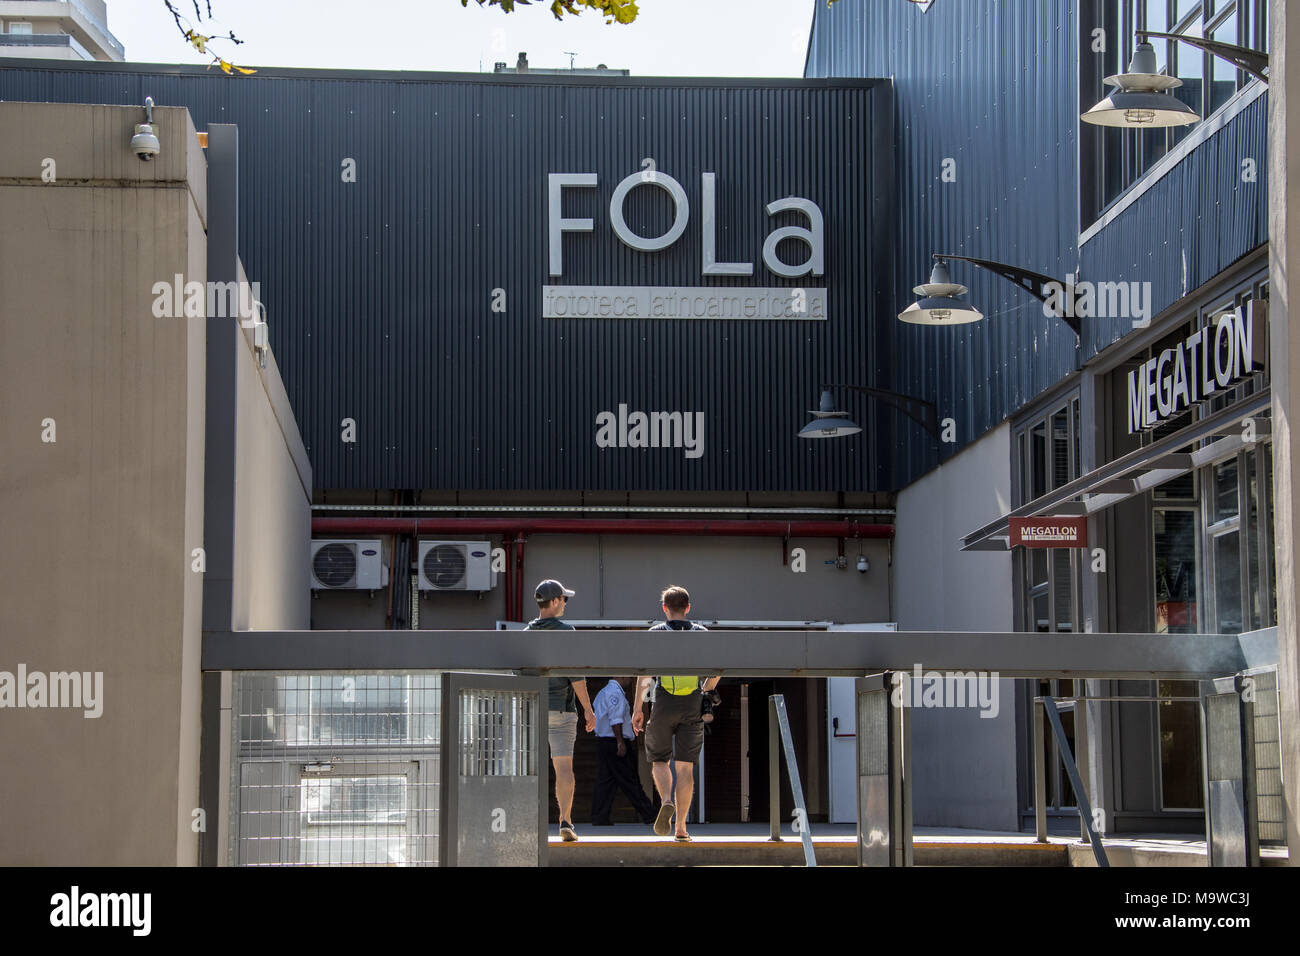 Fola, Fotothek Latinoamerica, Photogprahy Galerie und Ausstellungsflächen, Palermo, Buenos Aires, Argentinien Stockfoto